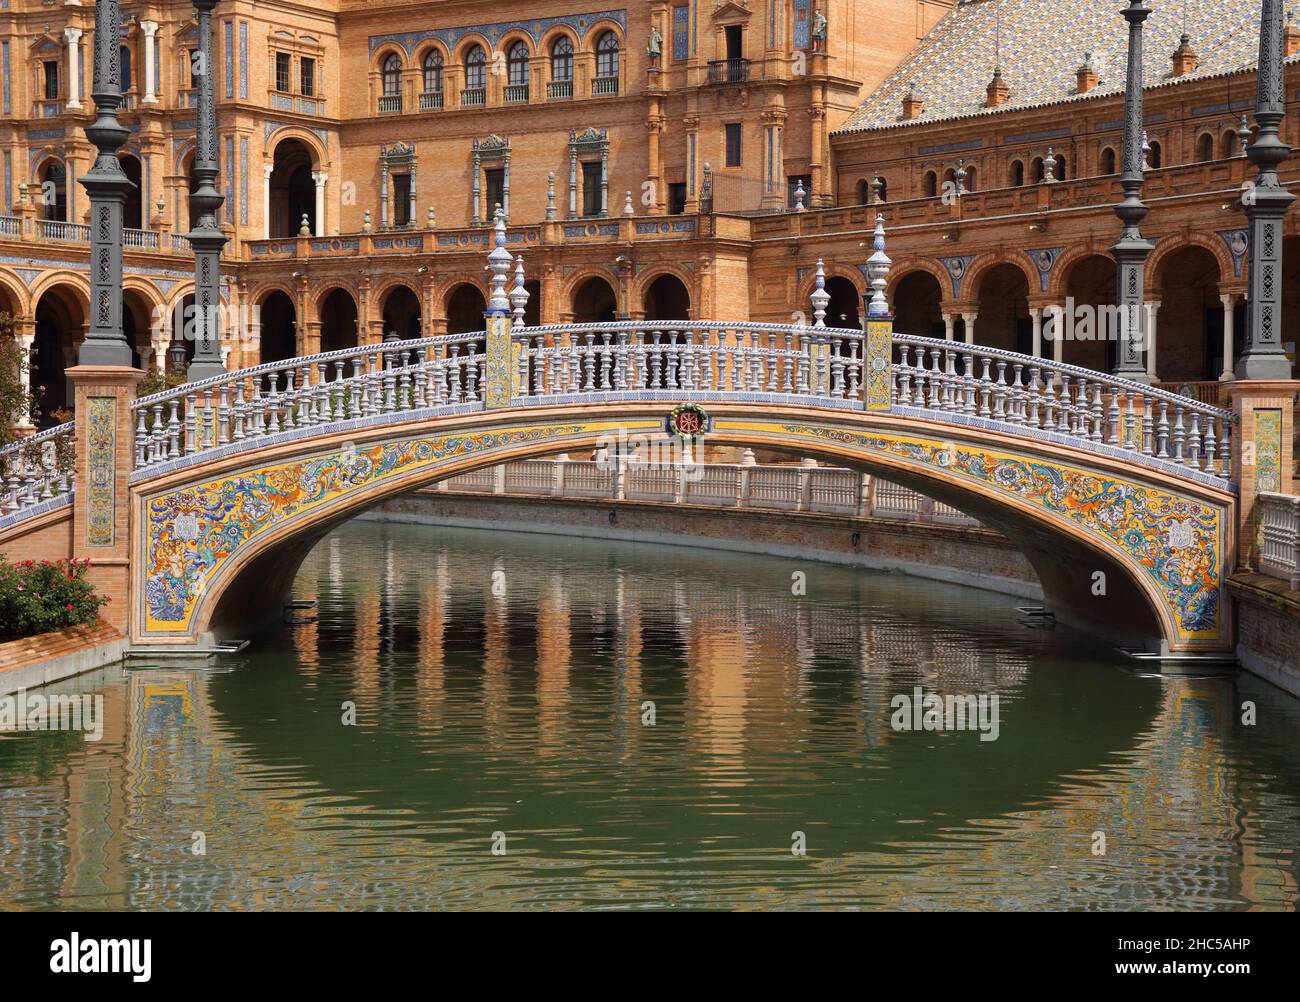 Particolare di un bellissimo ponte ornato decorato con piastrelle in ceramica nella storica Plaza de Espana o Piazza di Spagna. Siviglia, Spagna. Foto Stock